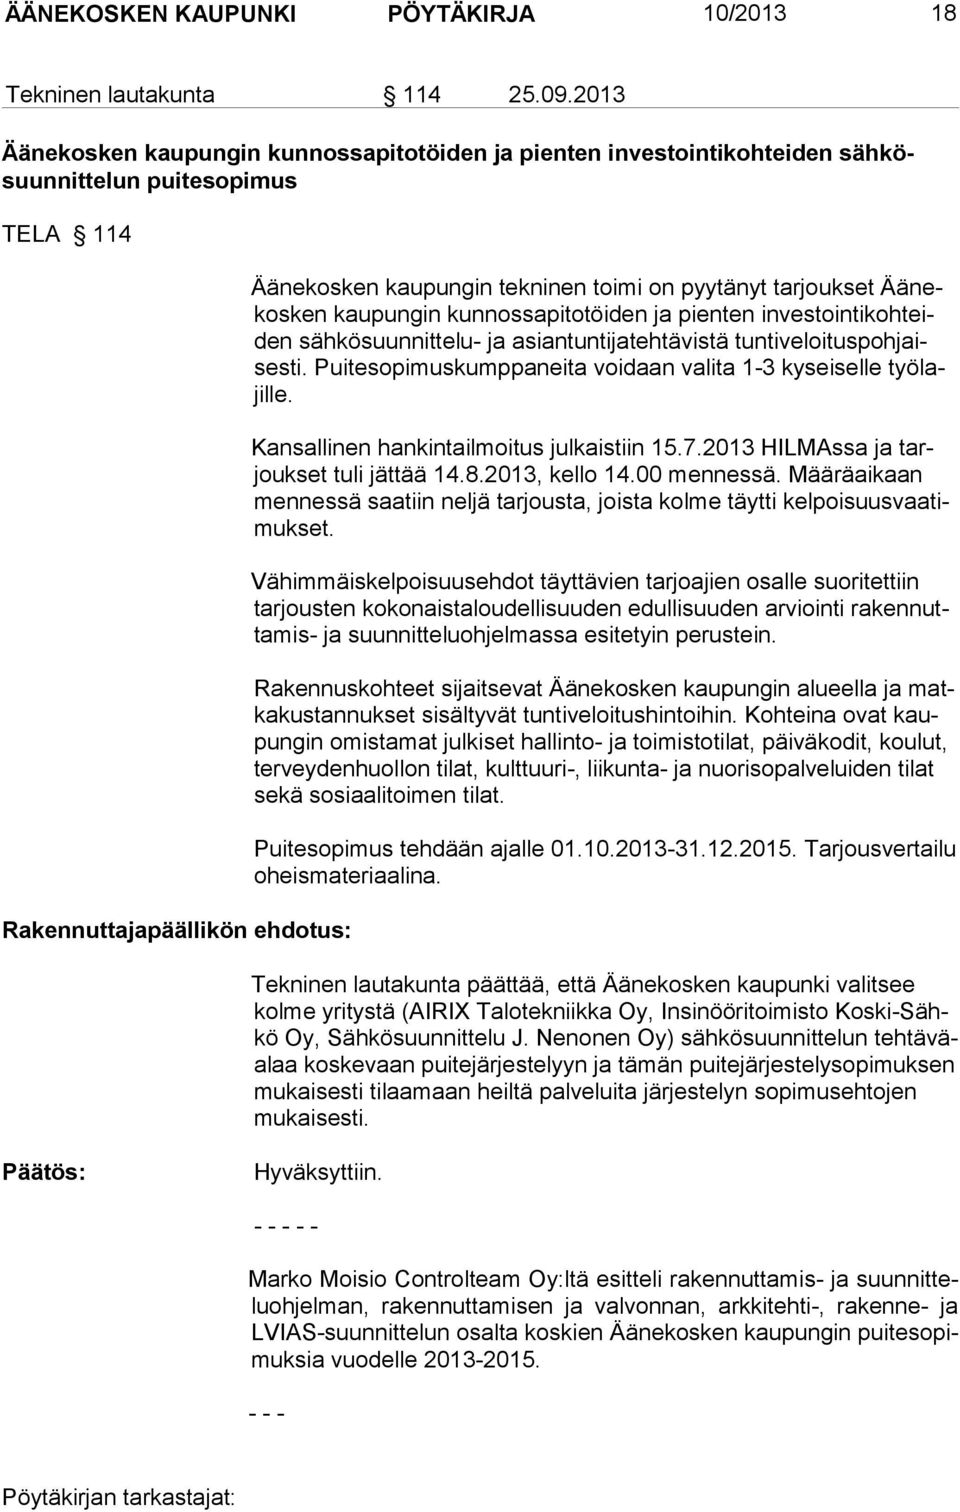 tarjoukset Äänekosken kaupungin kunnossapitotöiden ja pienten investointikohteiden sähkösuunnittelu- ja asiantuntijatehtävistä tuntiveloituspohjaises ti.